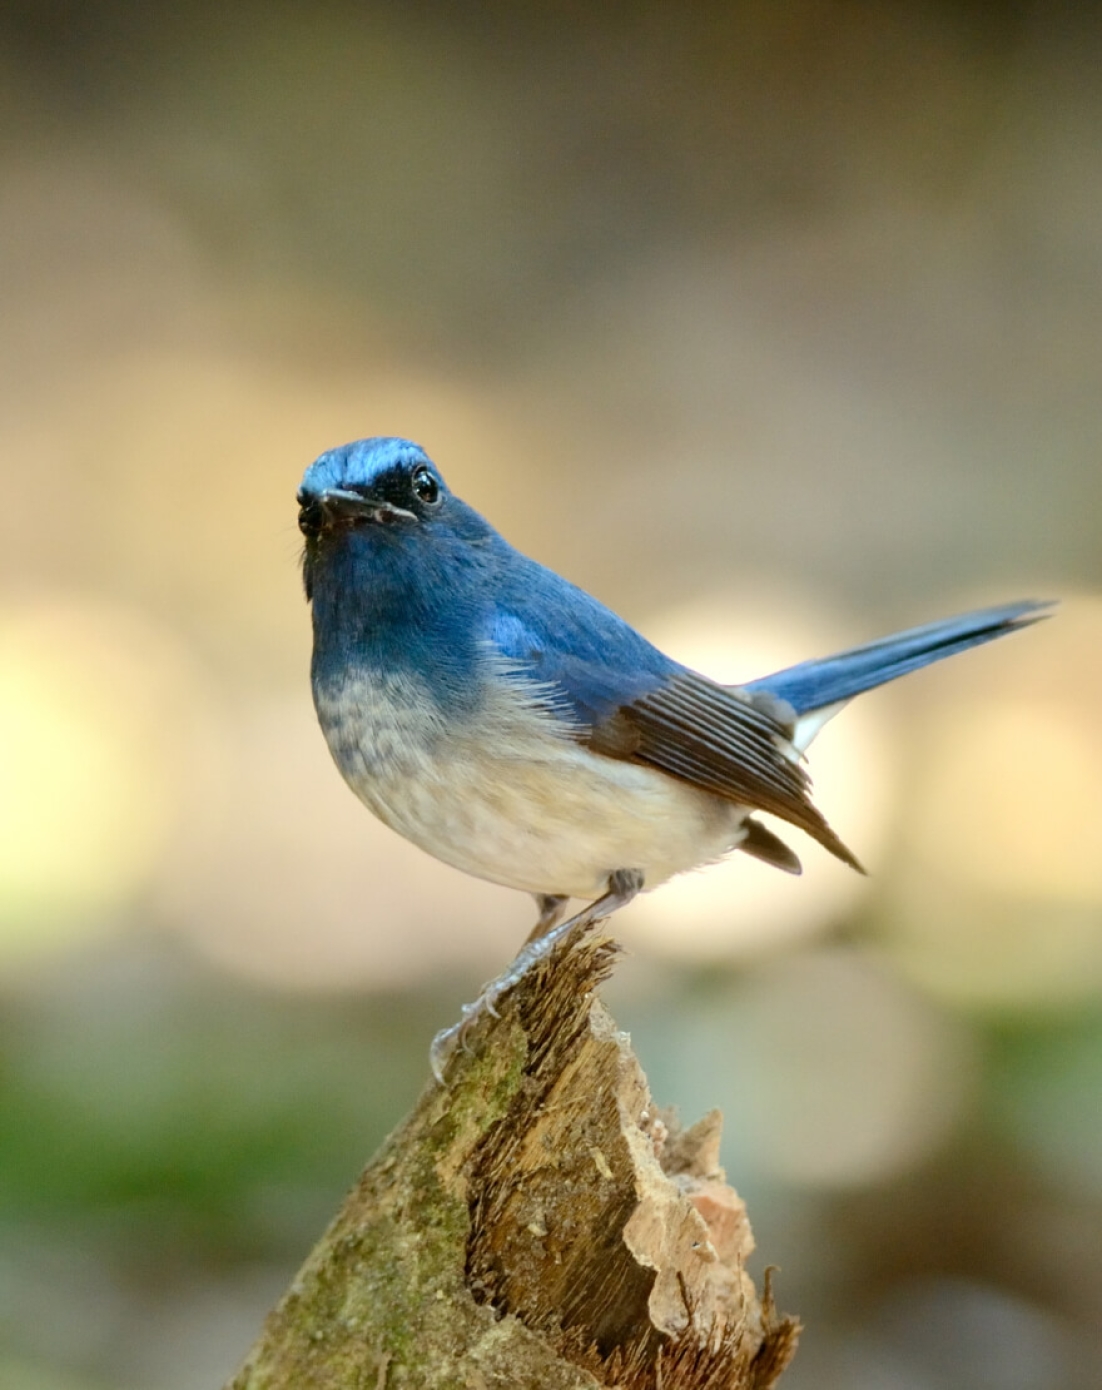 Mountain bluebird on a branch